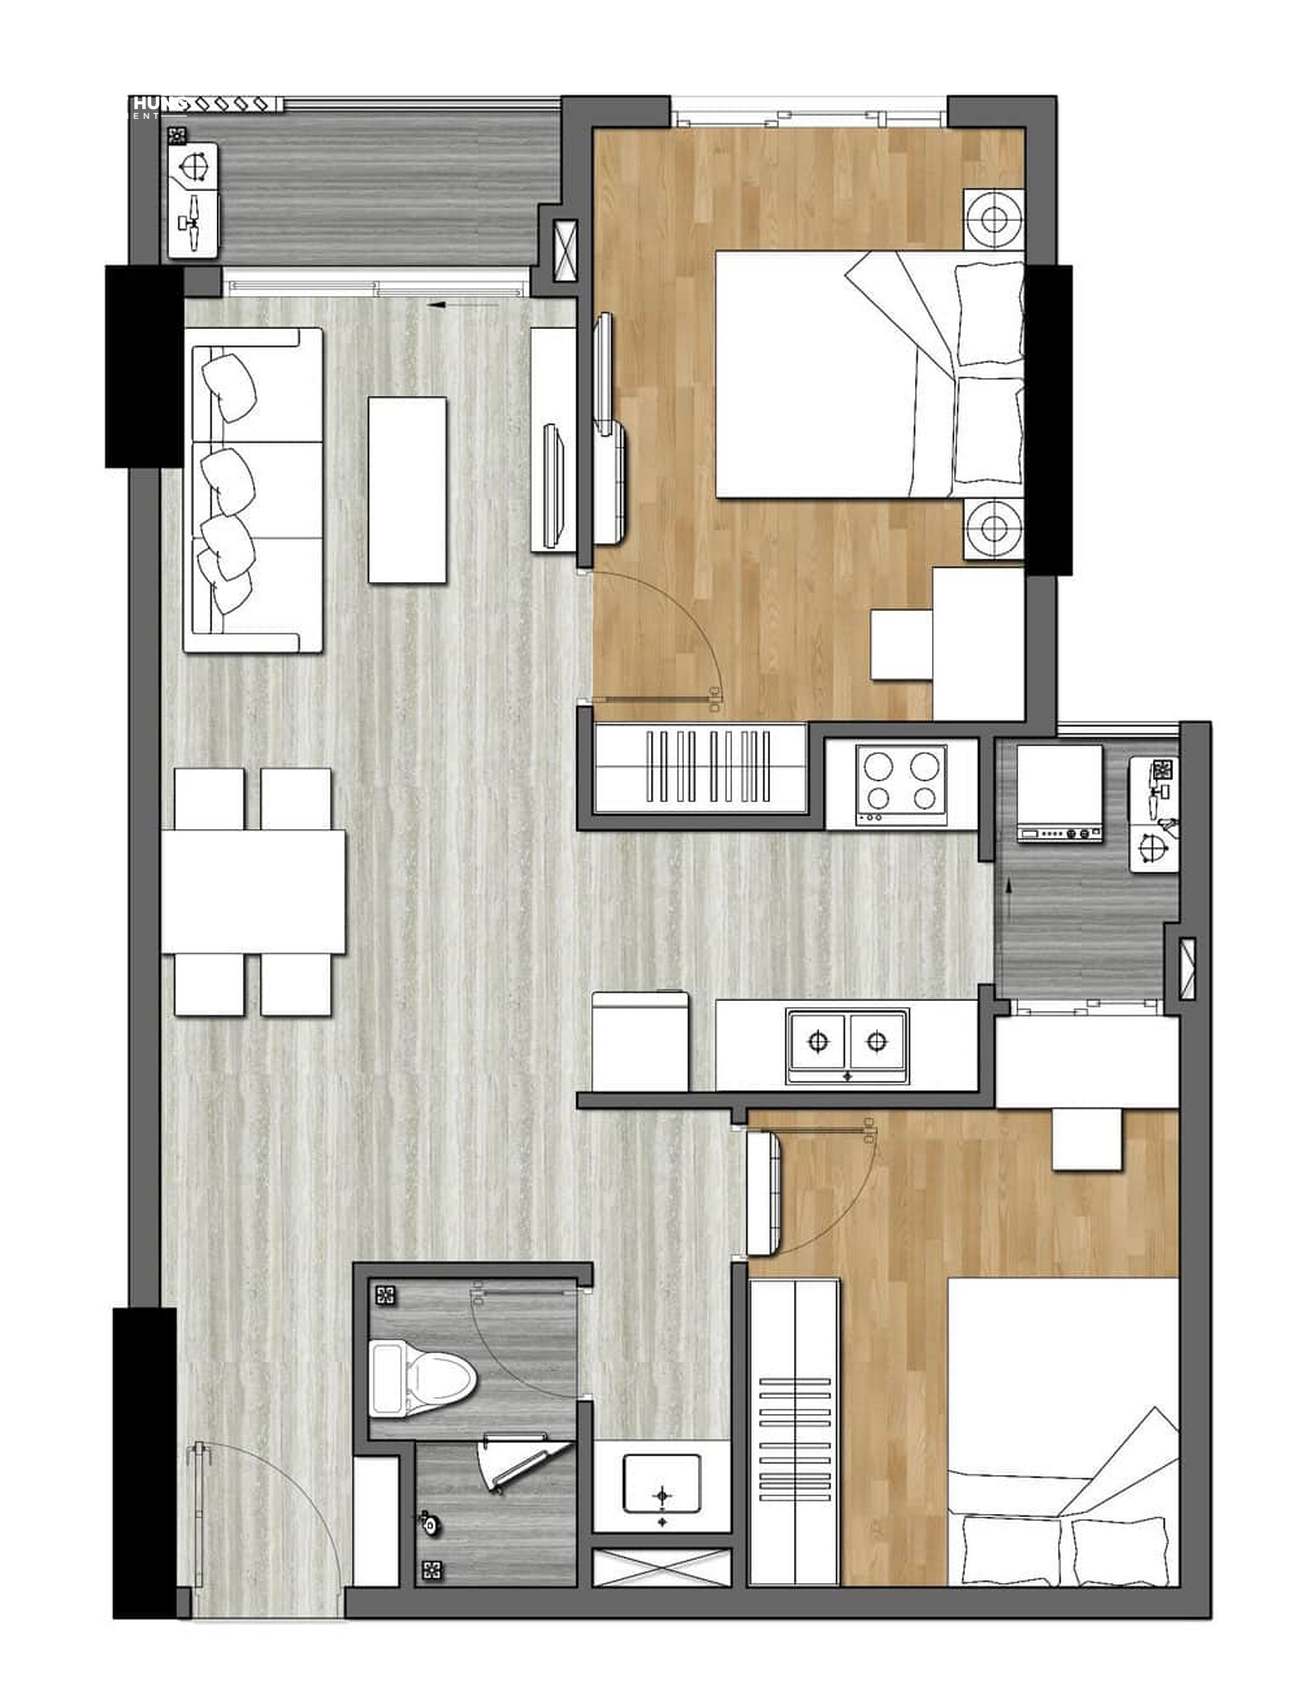 Thiết kế dự án căn hộ chung cư New Galaxy Dĩ An Bình Dương Đường Đường Thống Nhất chủ đầu tư Hưng Thịnh - Loại 2 phòng ngủ